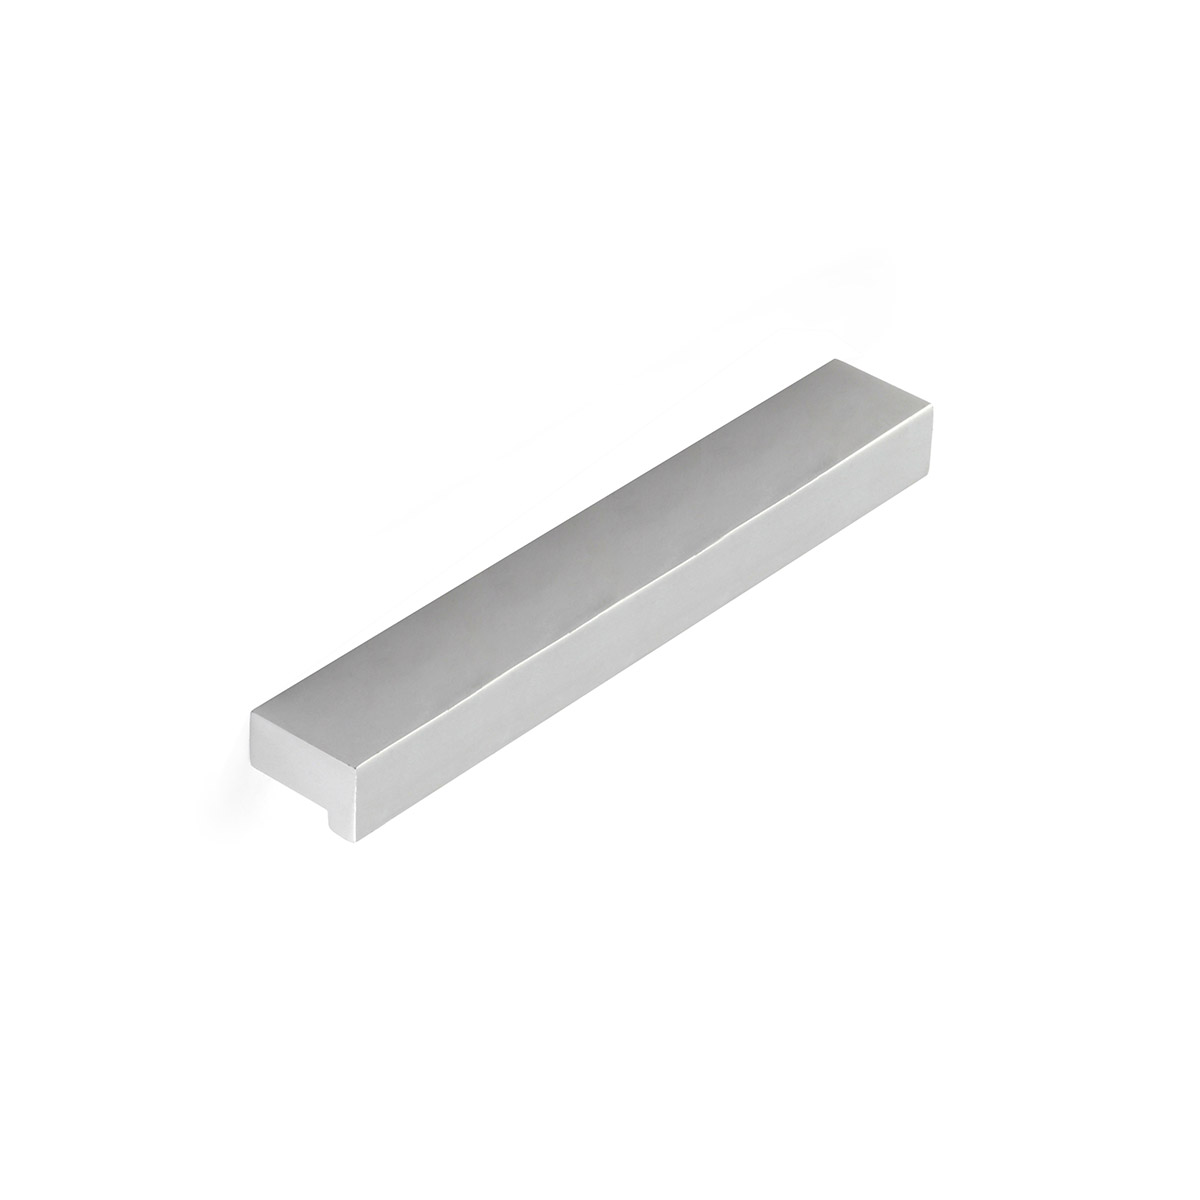 Asa de aluminio con acabado anodizado mate, dimensiones:150x12x18mm y entrepuntos:128mm